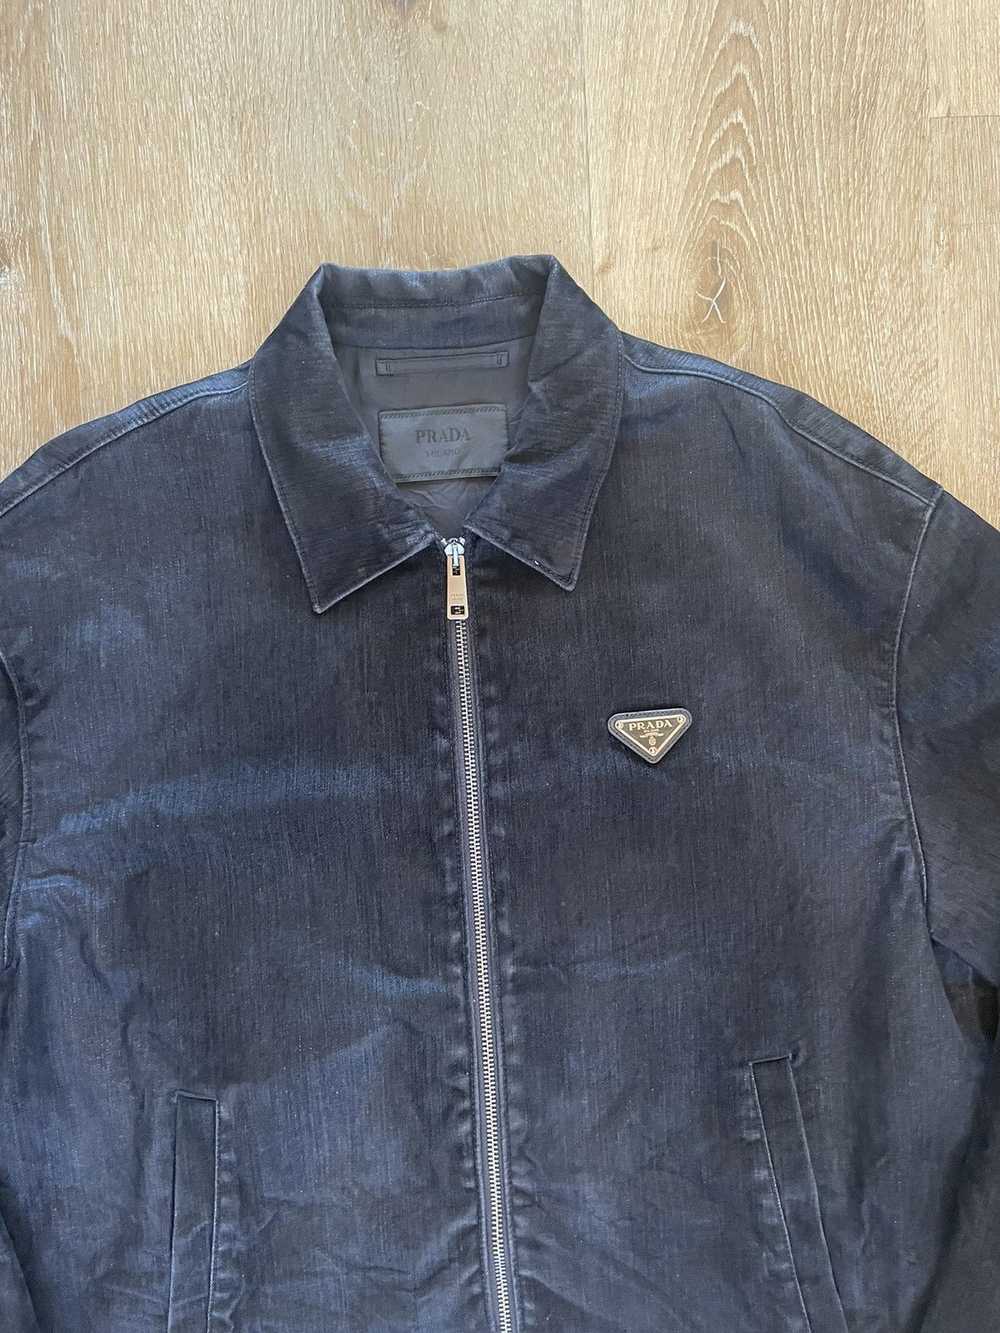 Prada SS22 Velvet Denim Blouson Jacket worn by Fr… - image 7